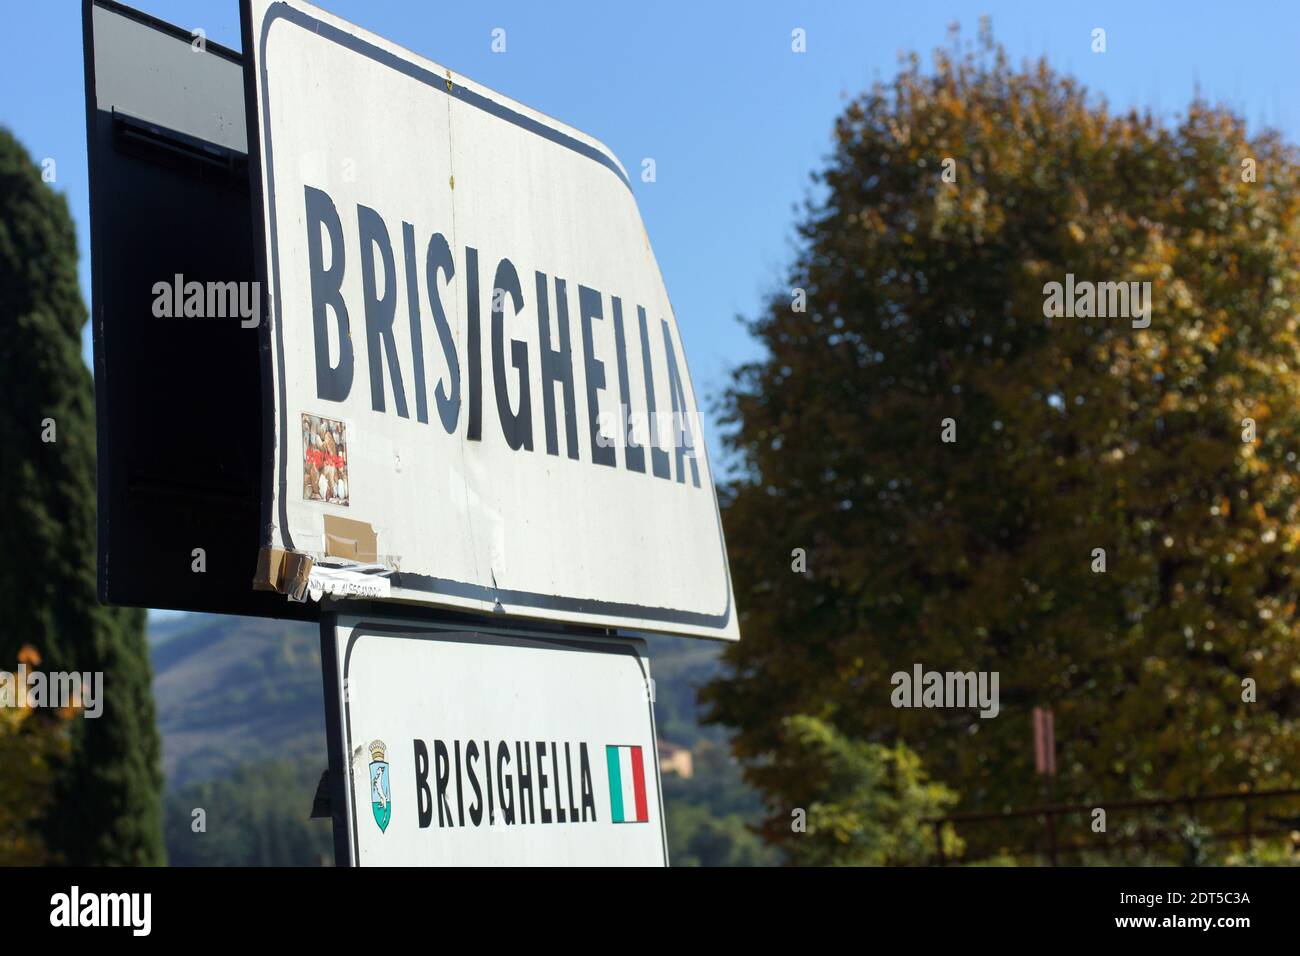 Hinweisschilder in der Brisighella ist eine Gemeinde in der Provinz Ravenna, Region Emilia-Romagna, im Nordosten Italiens. Stockfoto